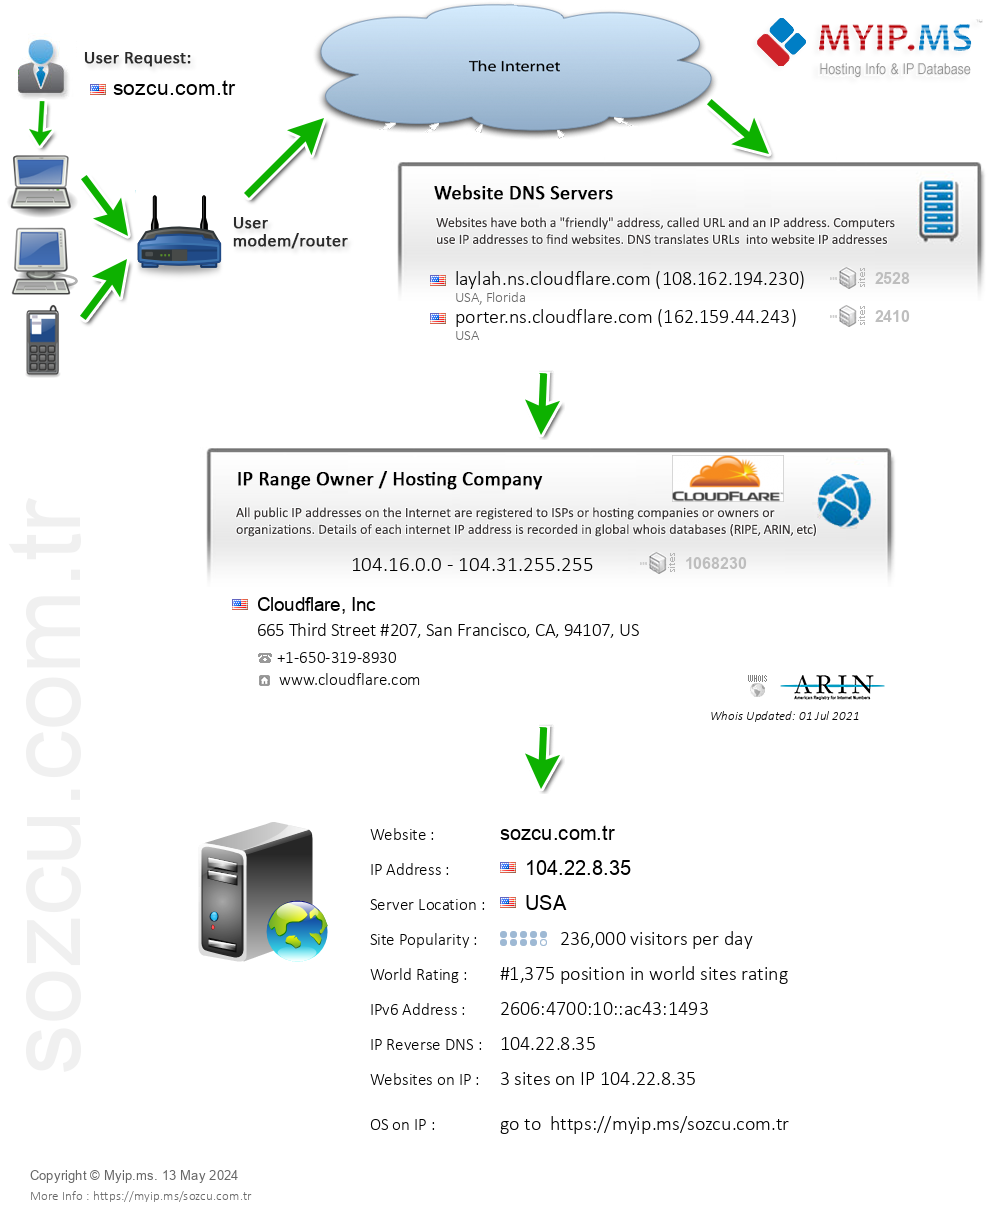 Sozcu.com.tr - Website Hosting Visual IP Diagram